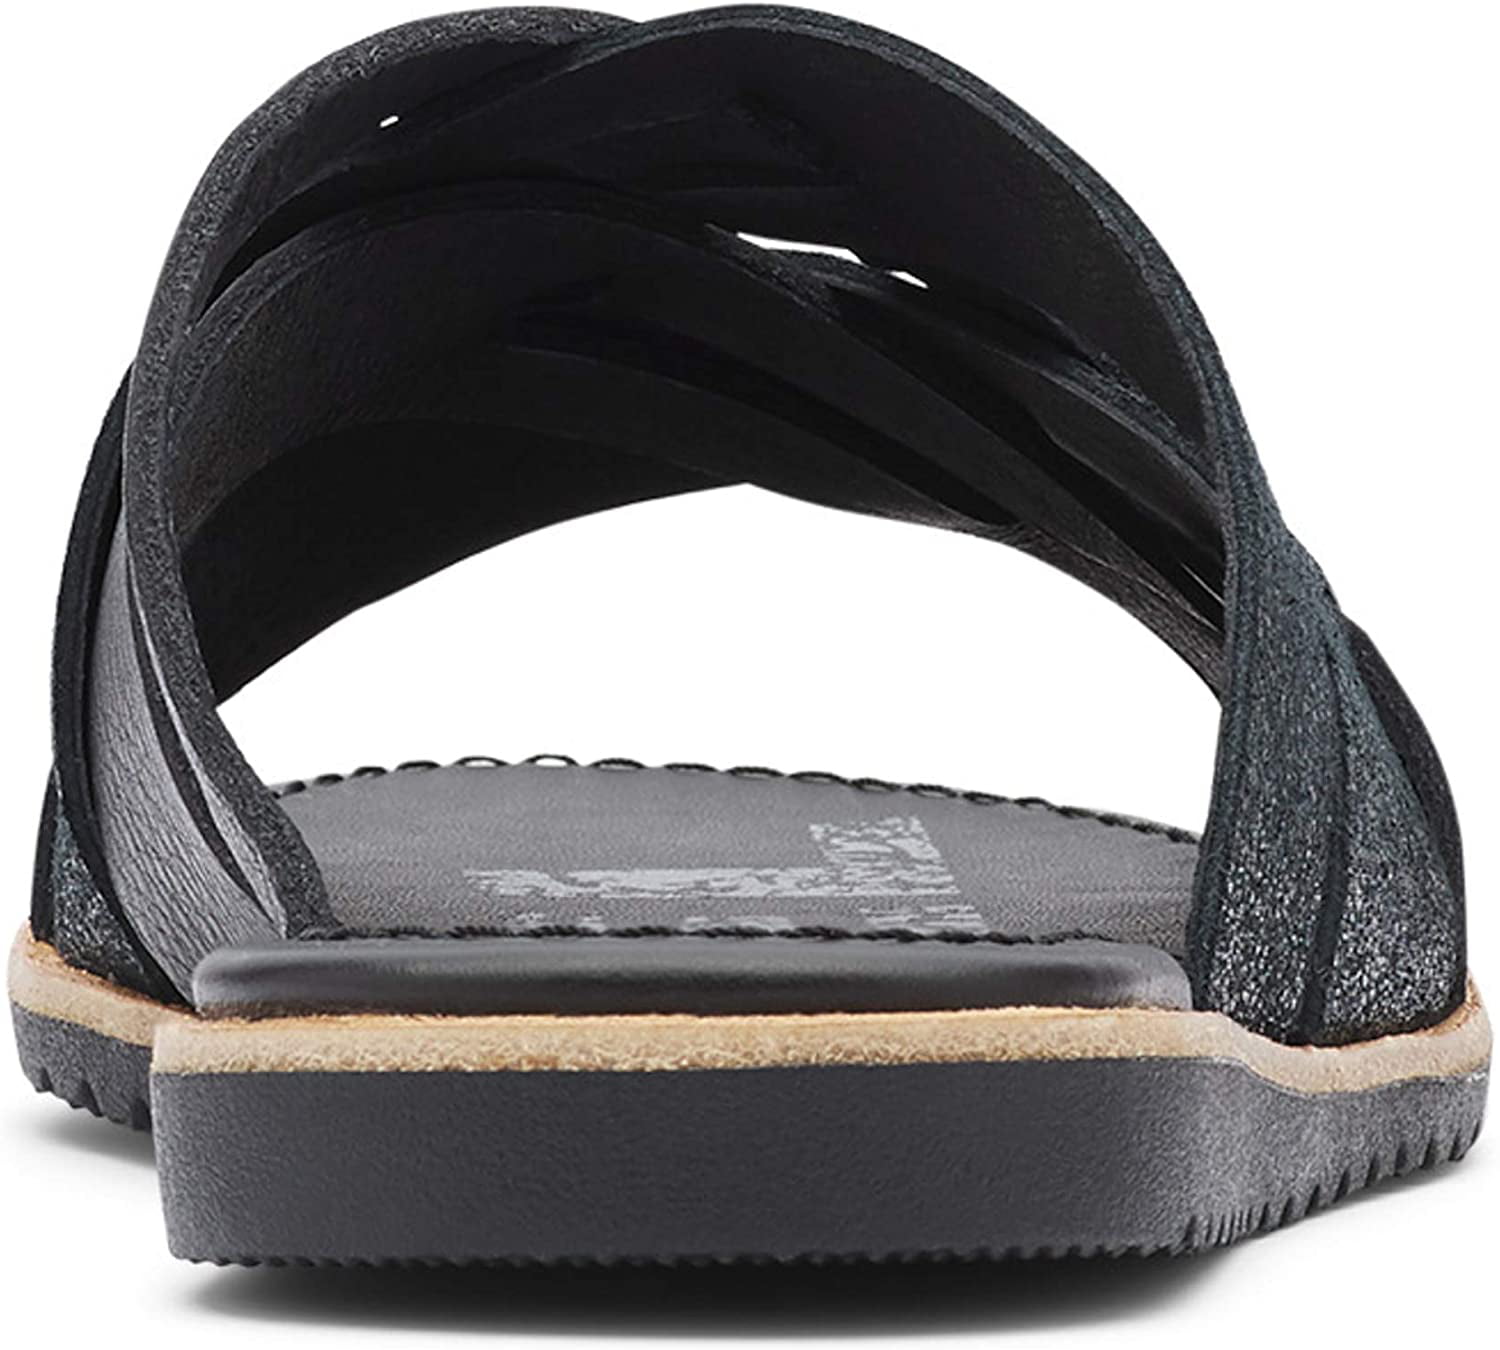 Sorel - Women's Ella Slide, Leather or Suede Slip-On Sandal, Black, 5 M ...